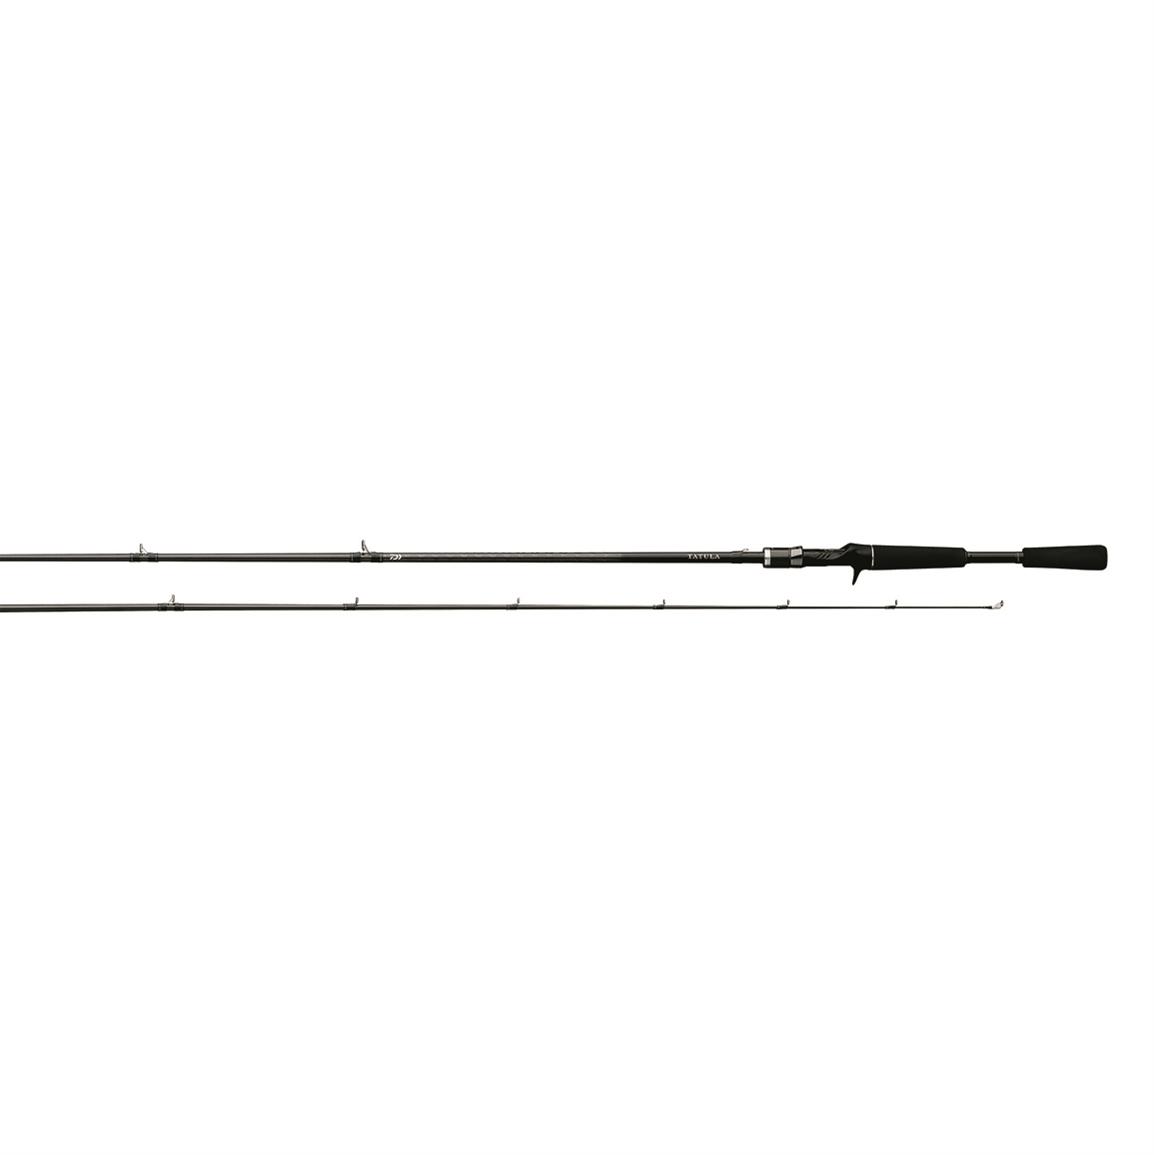 Daiwa Tatula XT Flipping Rod, 7'6" Length, Extra Heavy Power, Fast Action